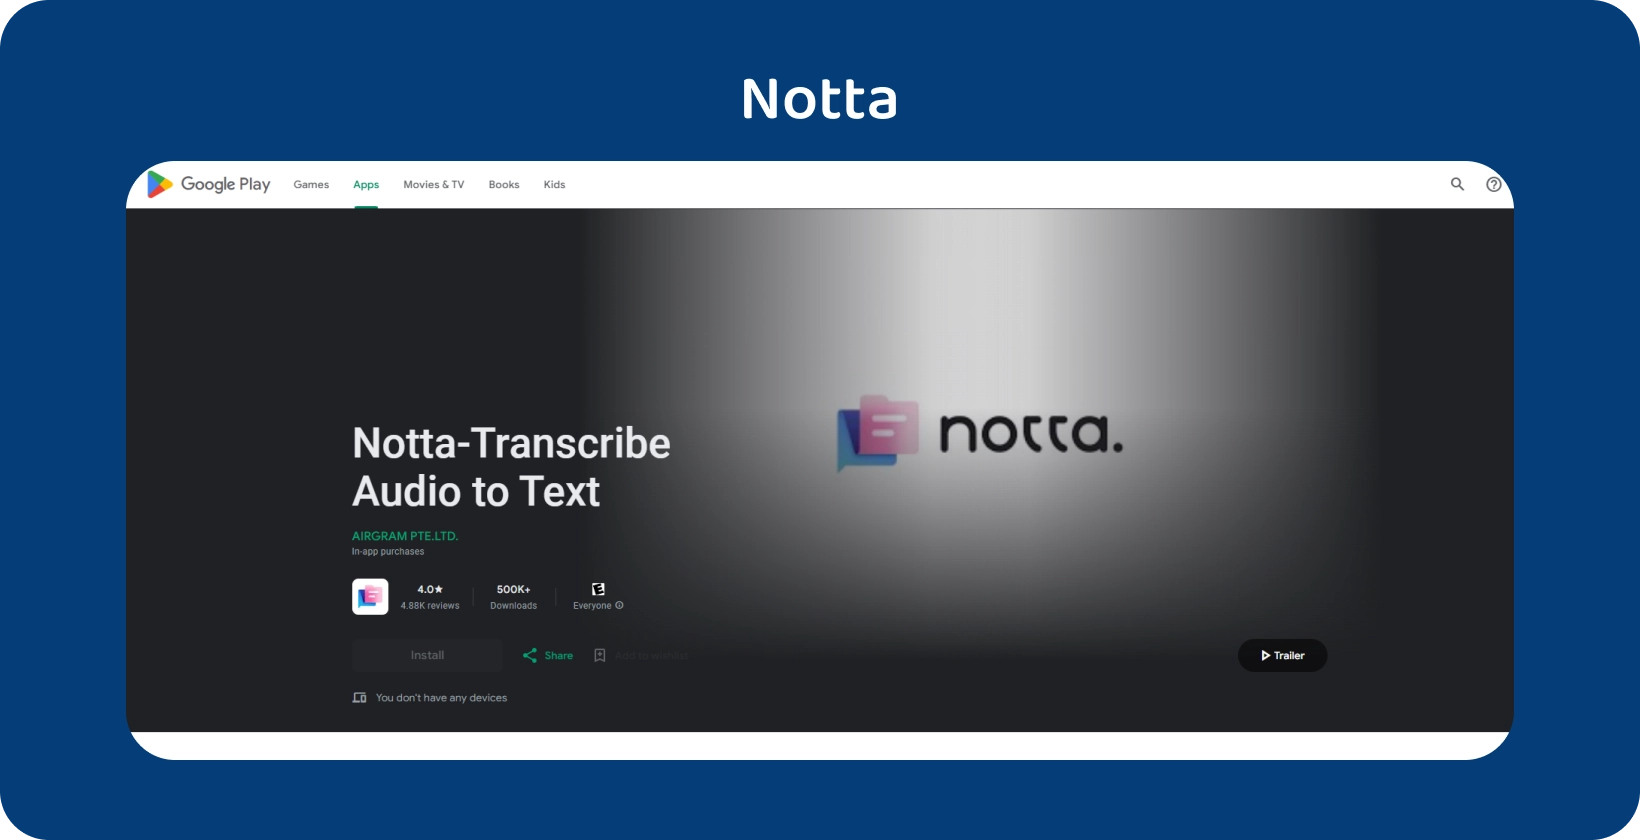 Aplikasi Notta.ai pada Google Play, mempamerkan keupayaannya untuk menyalin audio kepada teks dengan tepat pada Android.